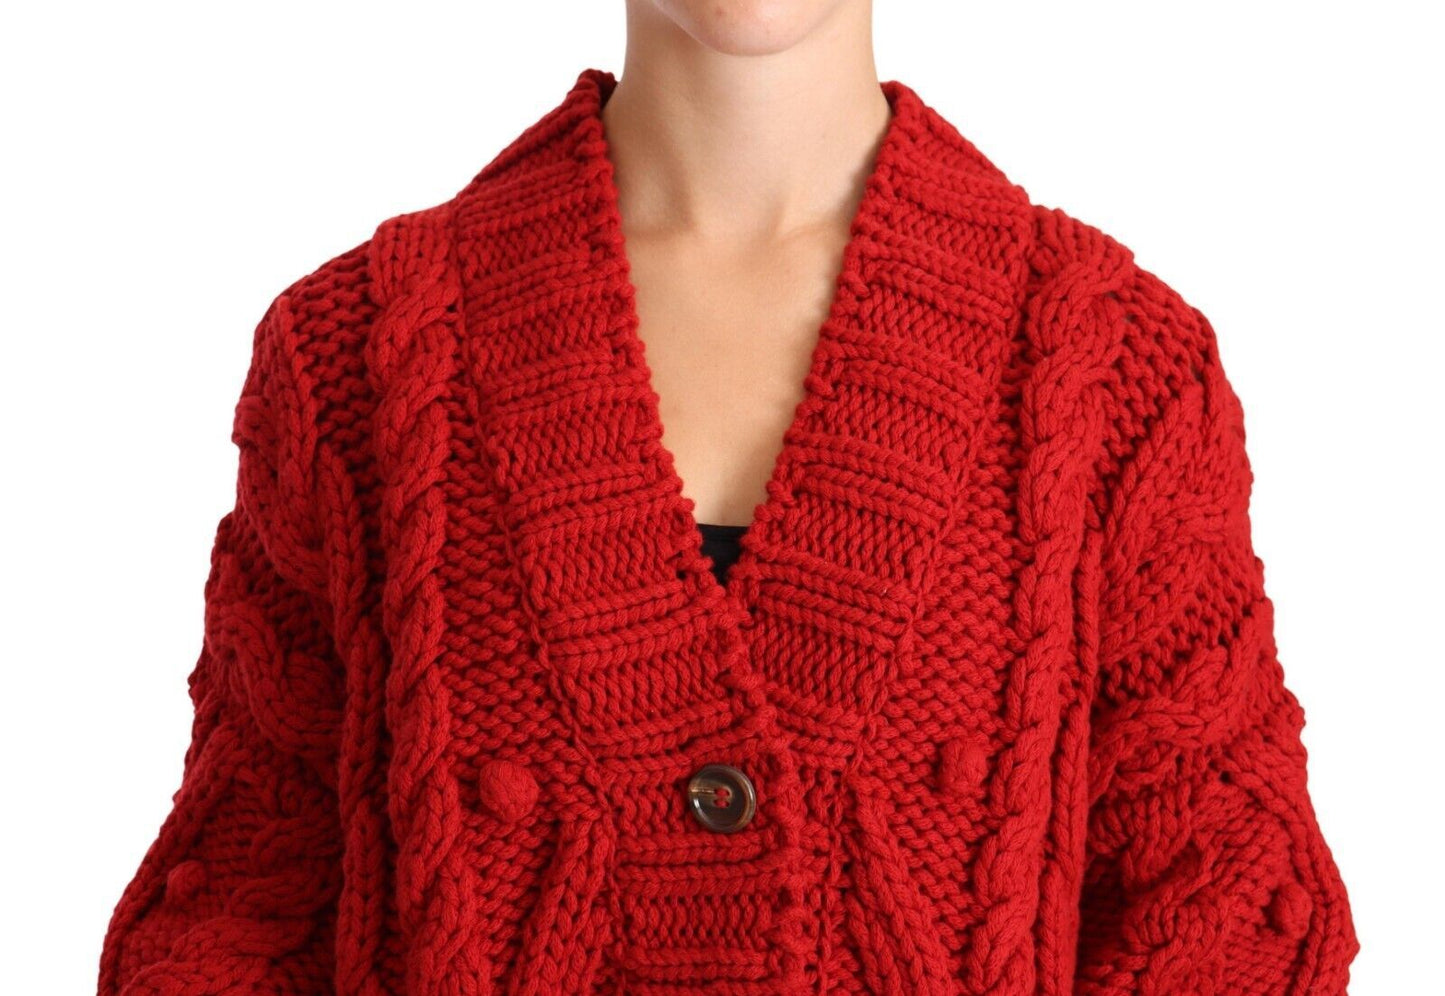 Ravishing Red Virgin Wool Cardigan